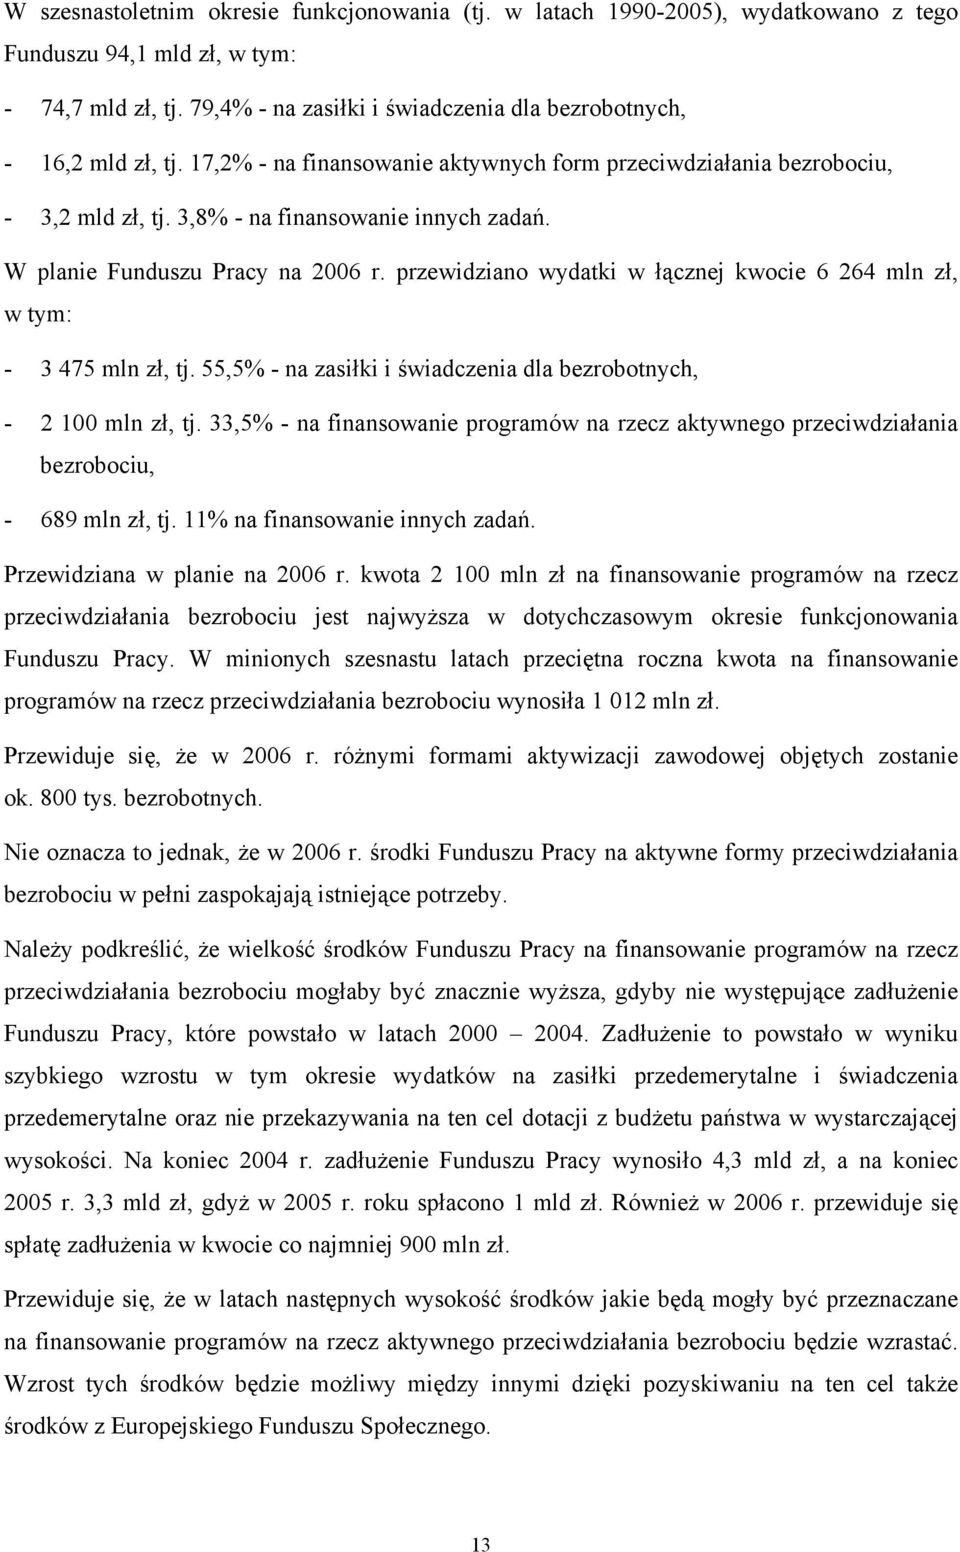 W planie Funduszu Pracy na 2006 r. przewidziano wydatki w łącznej kwocie 6 264 mln zł, w tym: - 3 475 mln zł, tj. 55,5% - na zasiłki i świadczenia dla bezrobotnych, - 2 100 mln zł, tj.